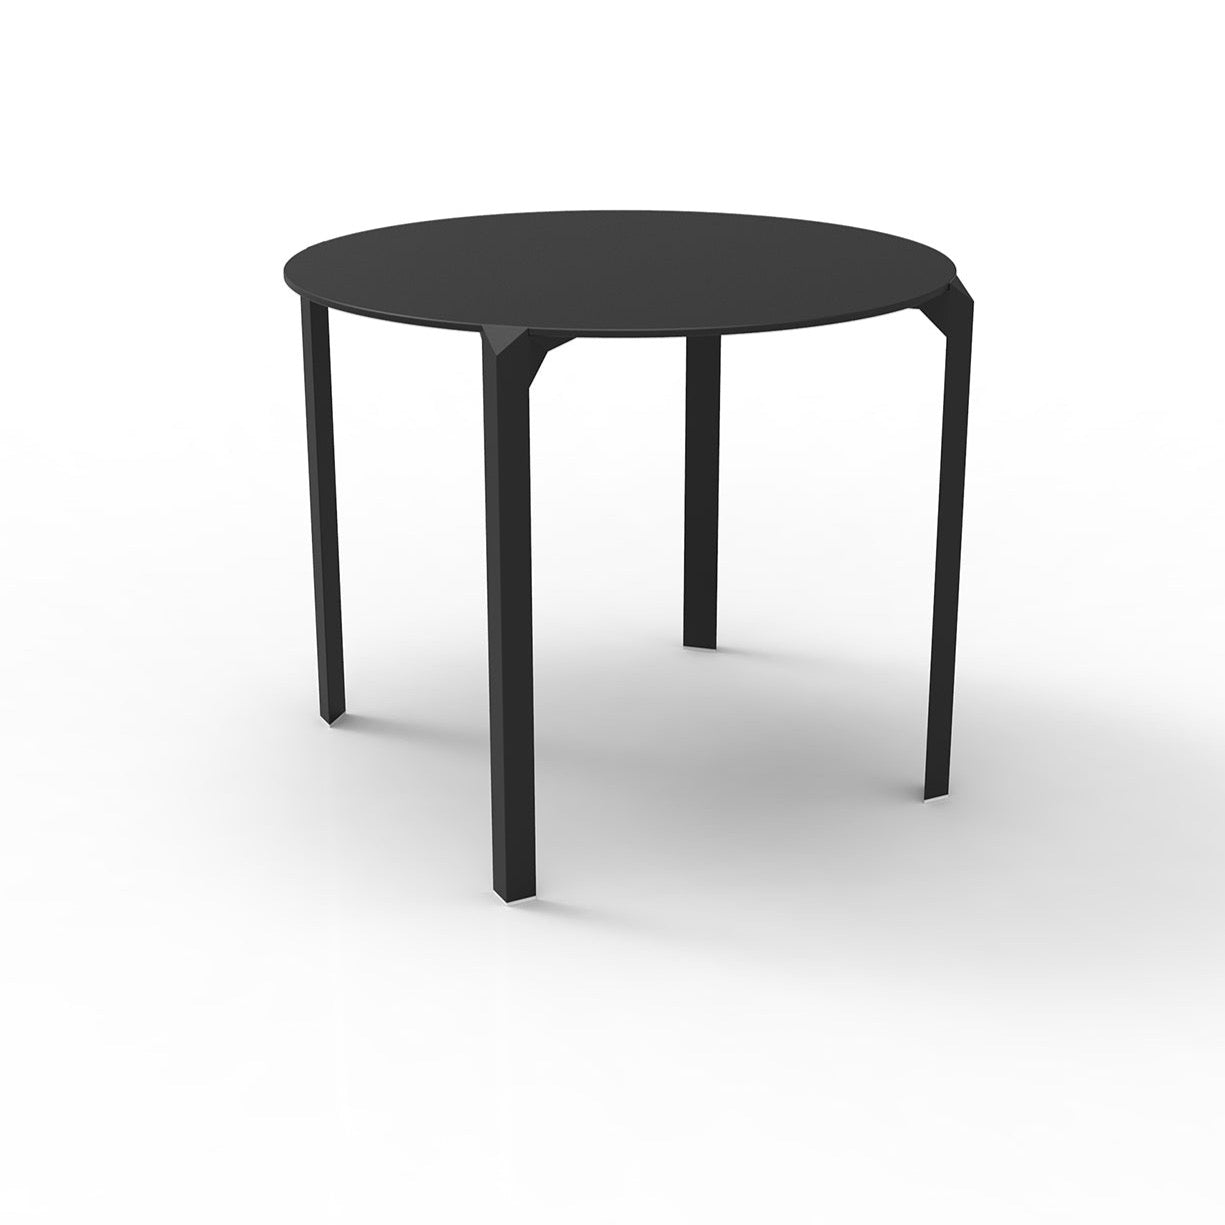 Set of 2 Vondom QUARTZ dining tables, round, four-legged 100cm